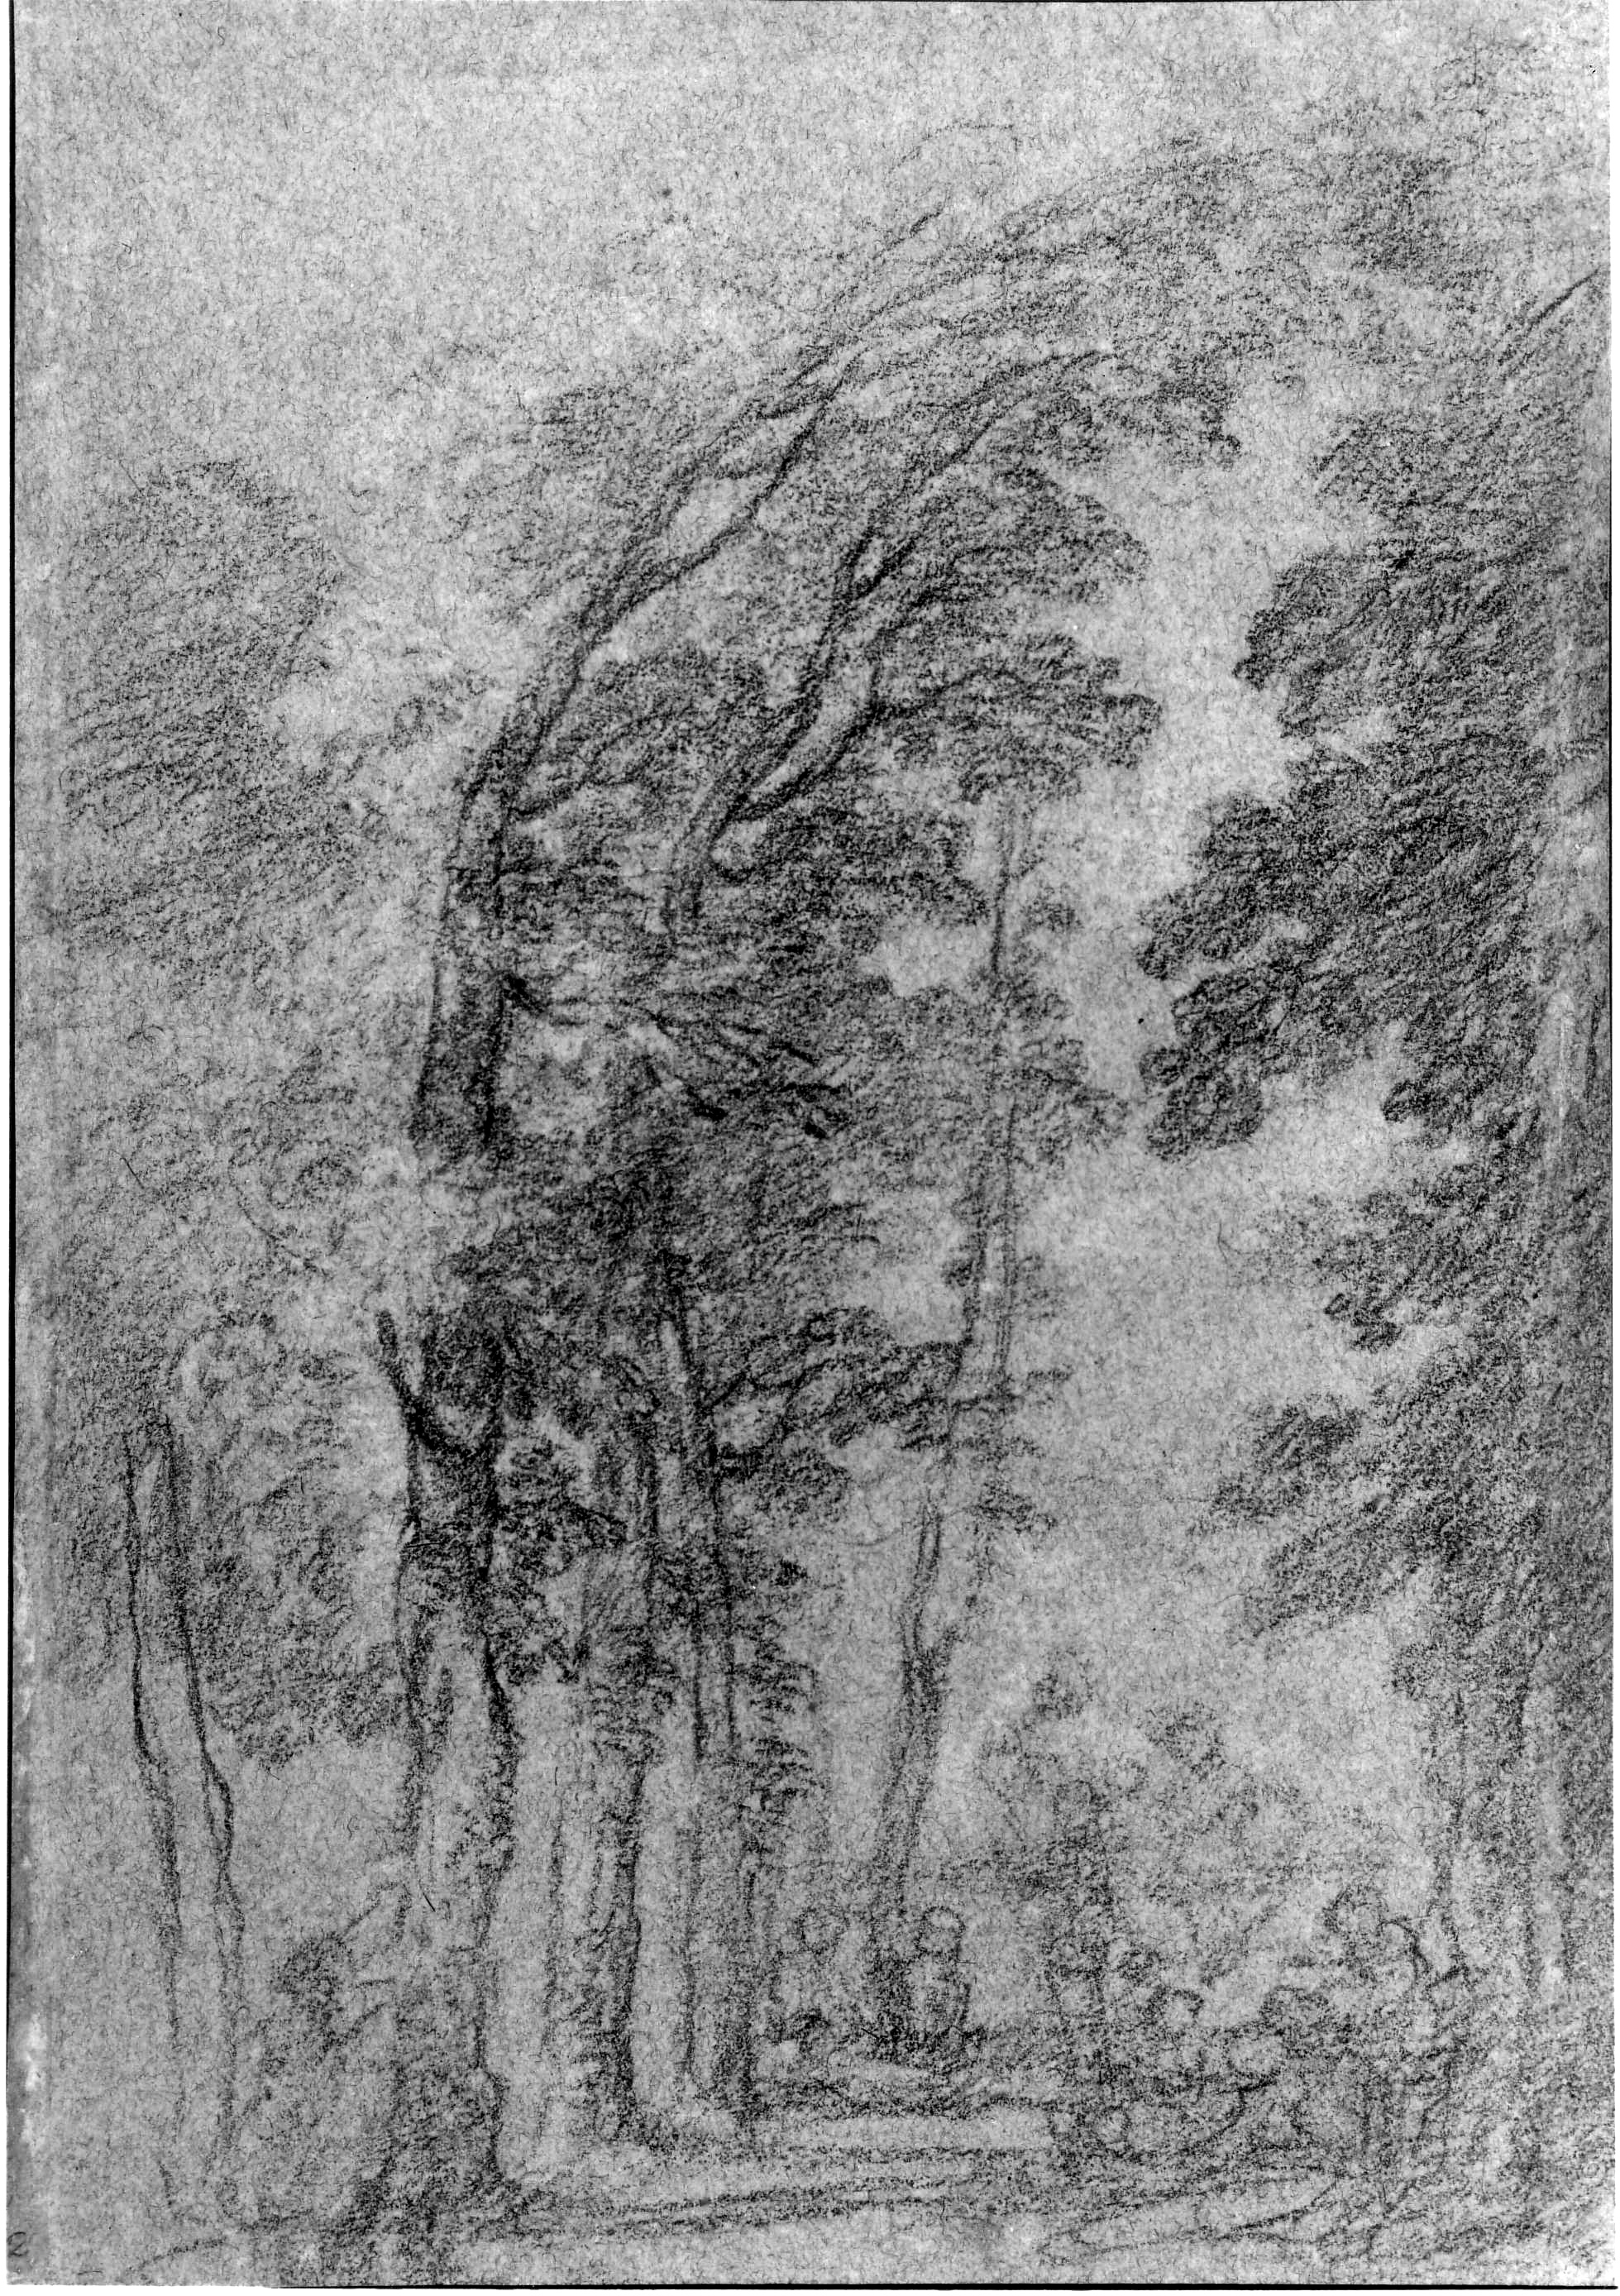 13. Michel Barthélemy Ollivier, Fête Champêtre under Trees, 19.2 x 13.2 cm, black chalk on blue paper. San Francisco Museums of Fine Arts, George de Batz collection.